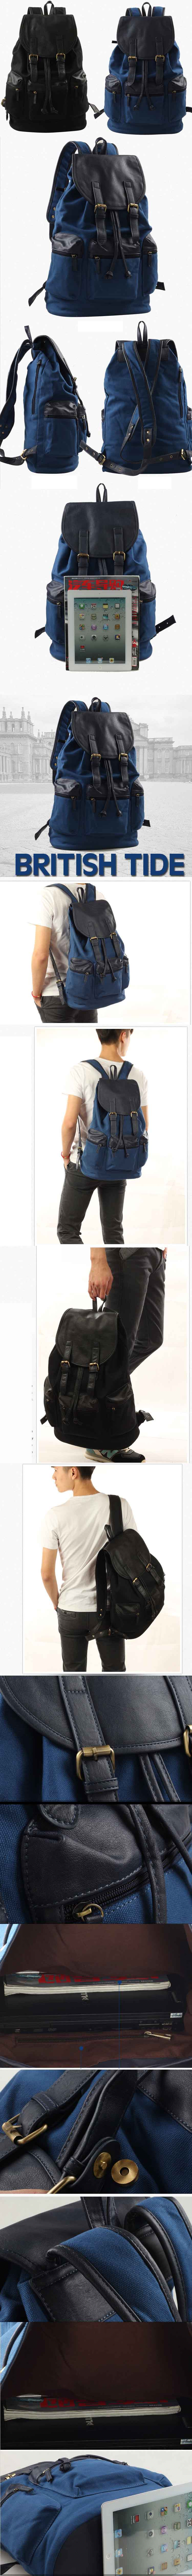 tas ransel pria model terbaru dengan desain elegan dan menarik ala korea, klik dan pesan online tas ransel pria terlengkap hanya di pfp store